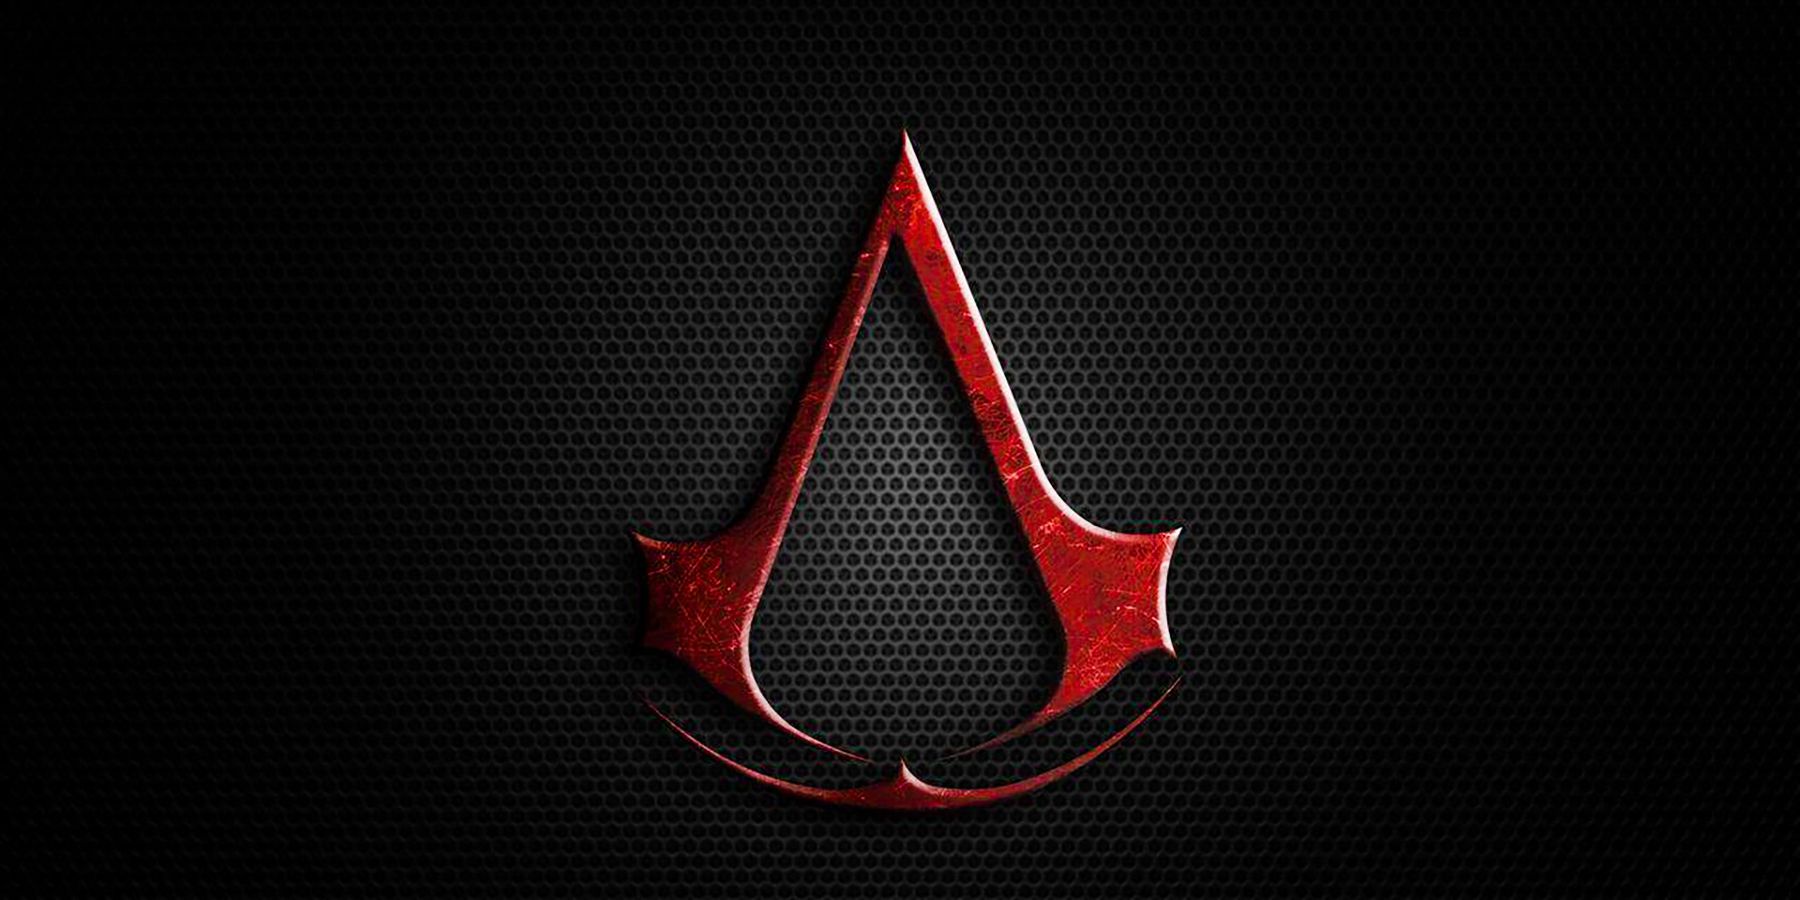 New Assassin’s Creed -spilindstilling potentielt lækket